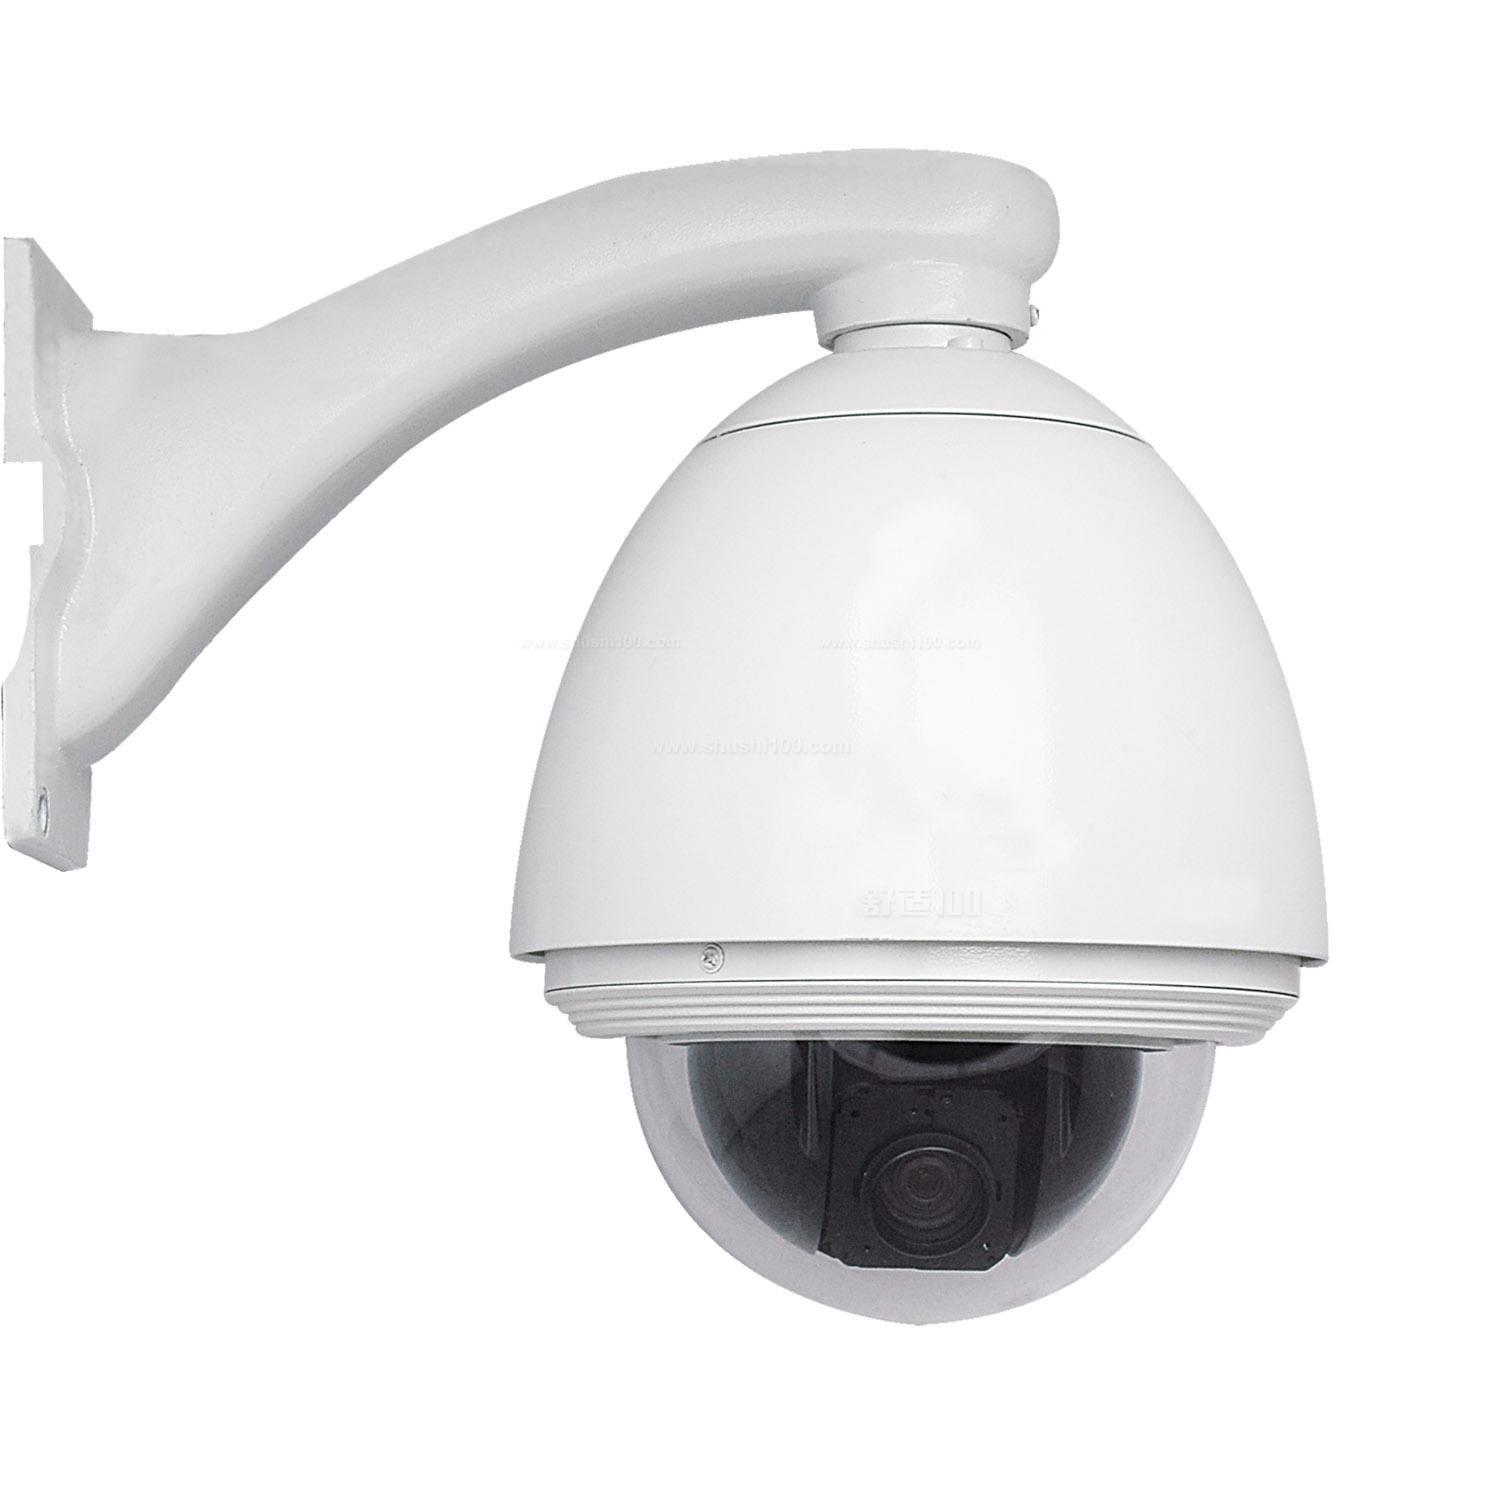 工业监控摄像头不锈钢防水网络高清红外夜视功能防腐蚀防爆摄像机-阿里巴巴